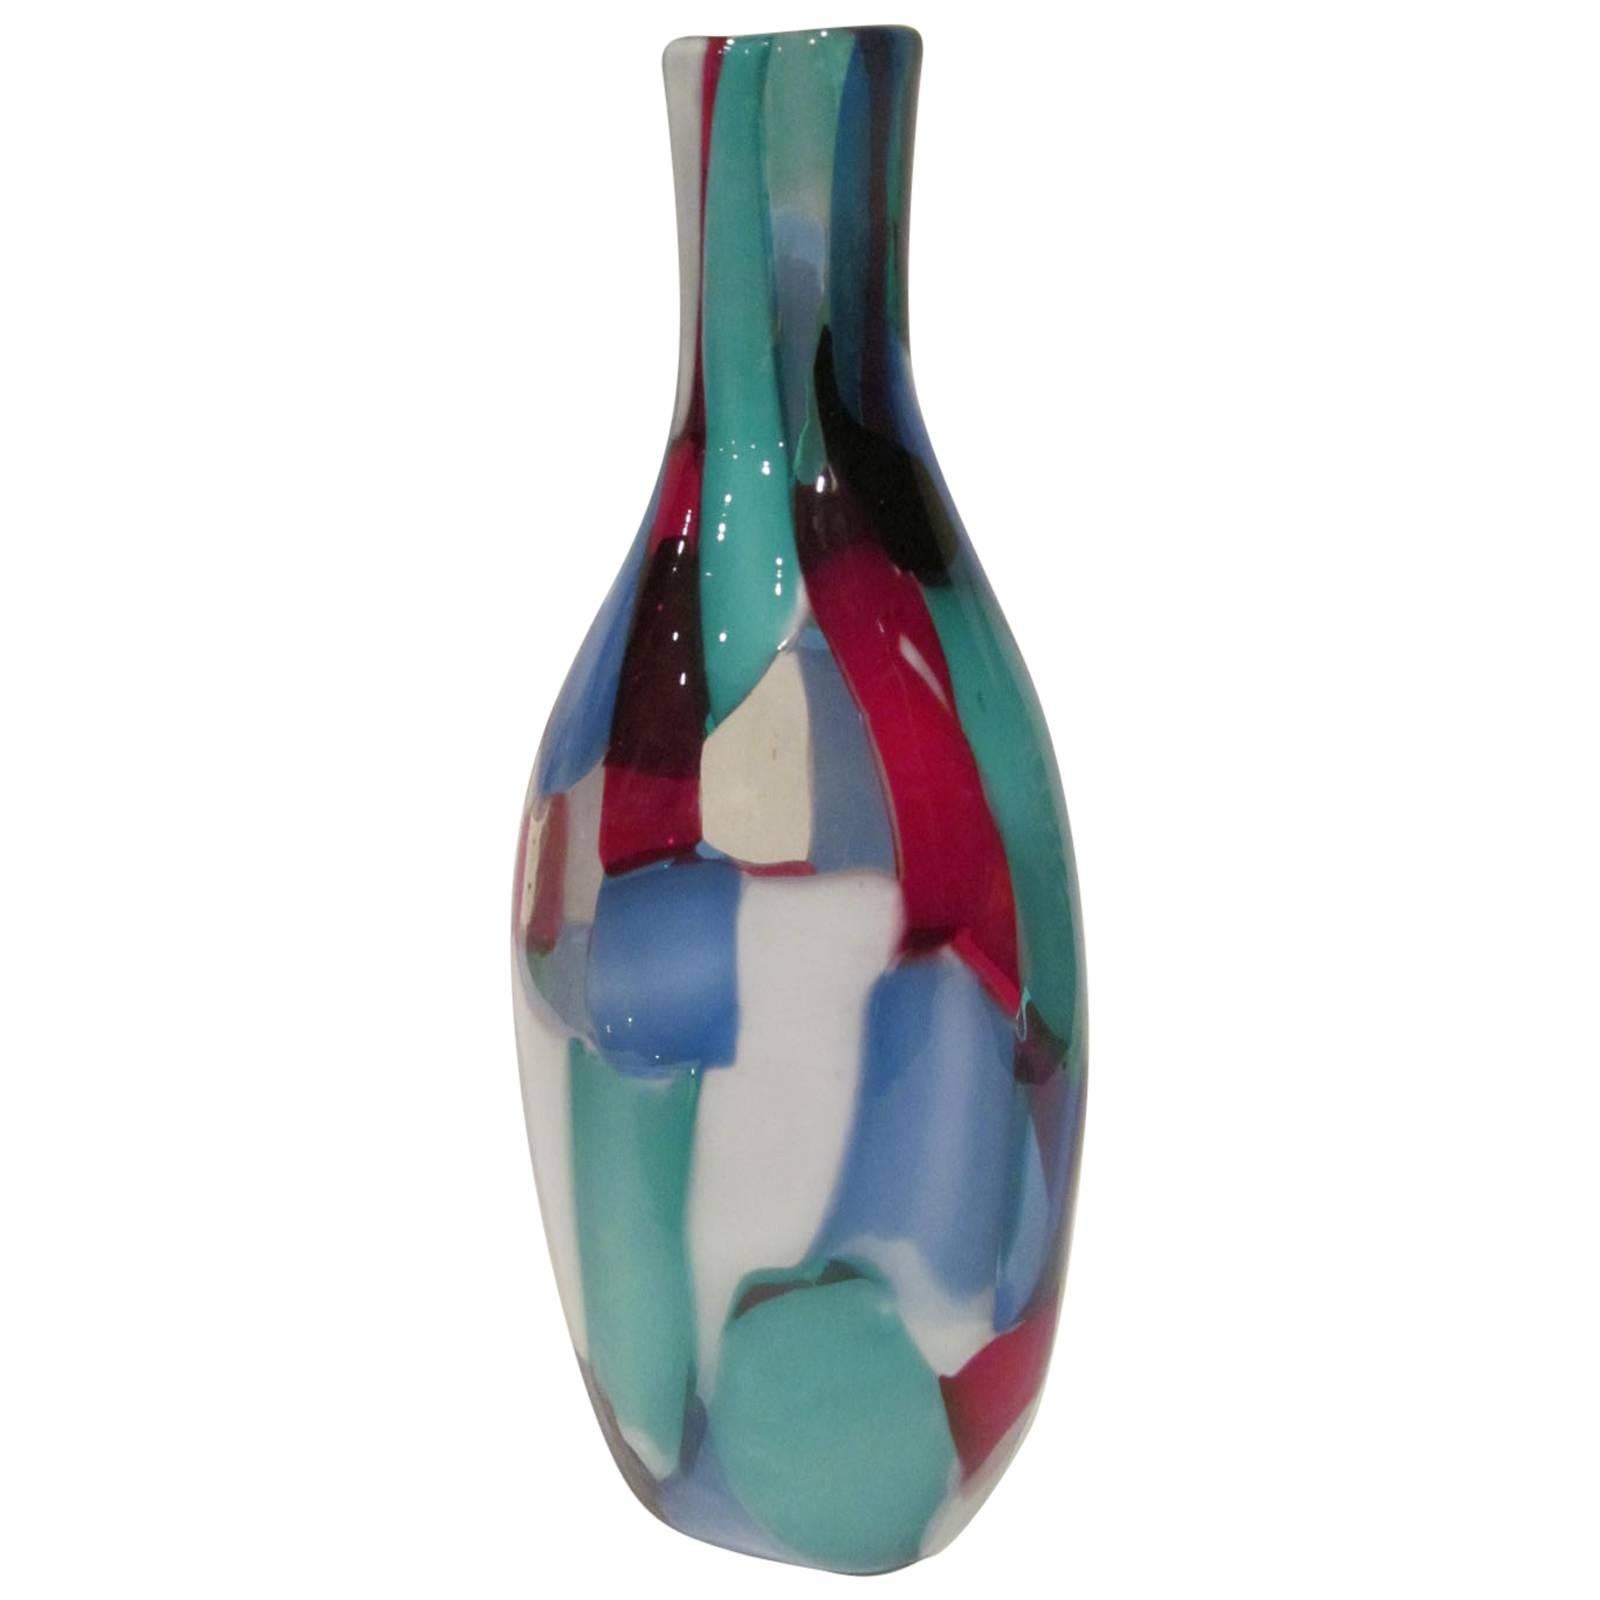 Rare Venini Patchwork Pezzato Murano Vase Designed by Fulvio Bianconi, 1950s